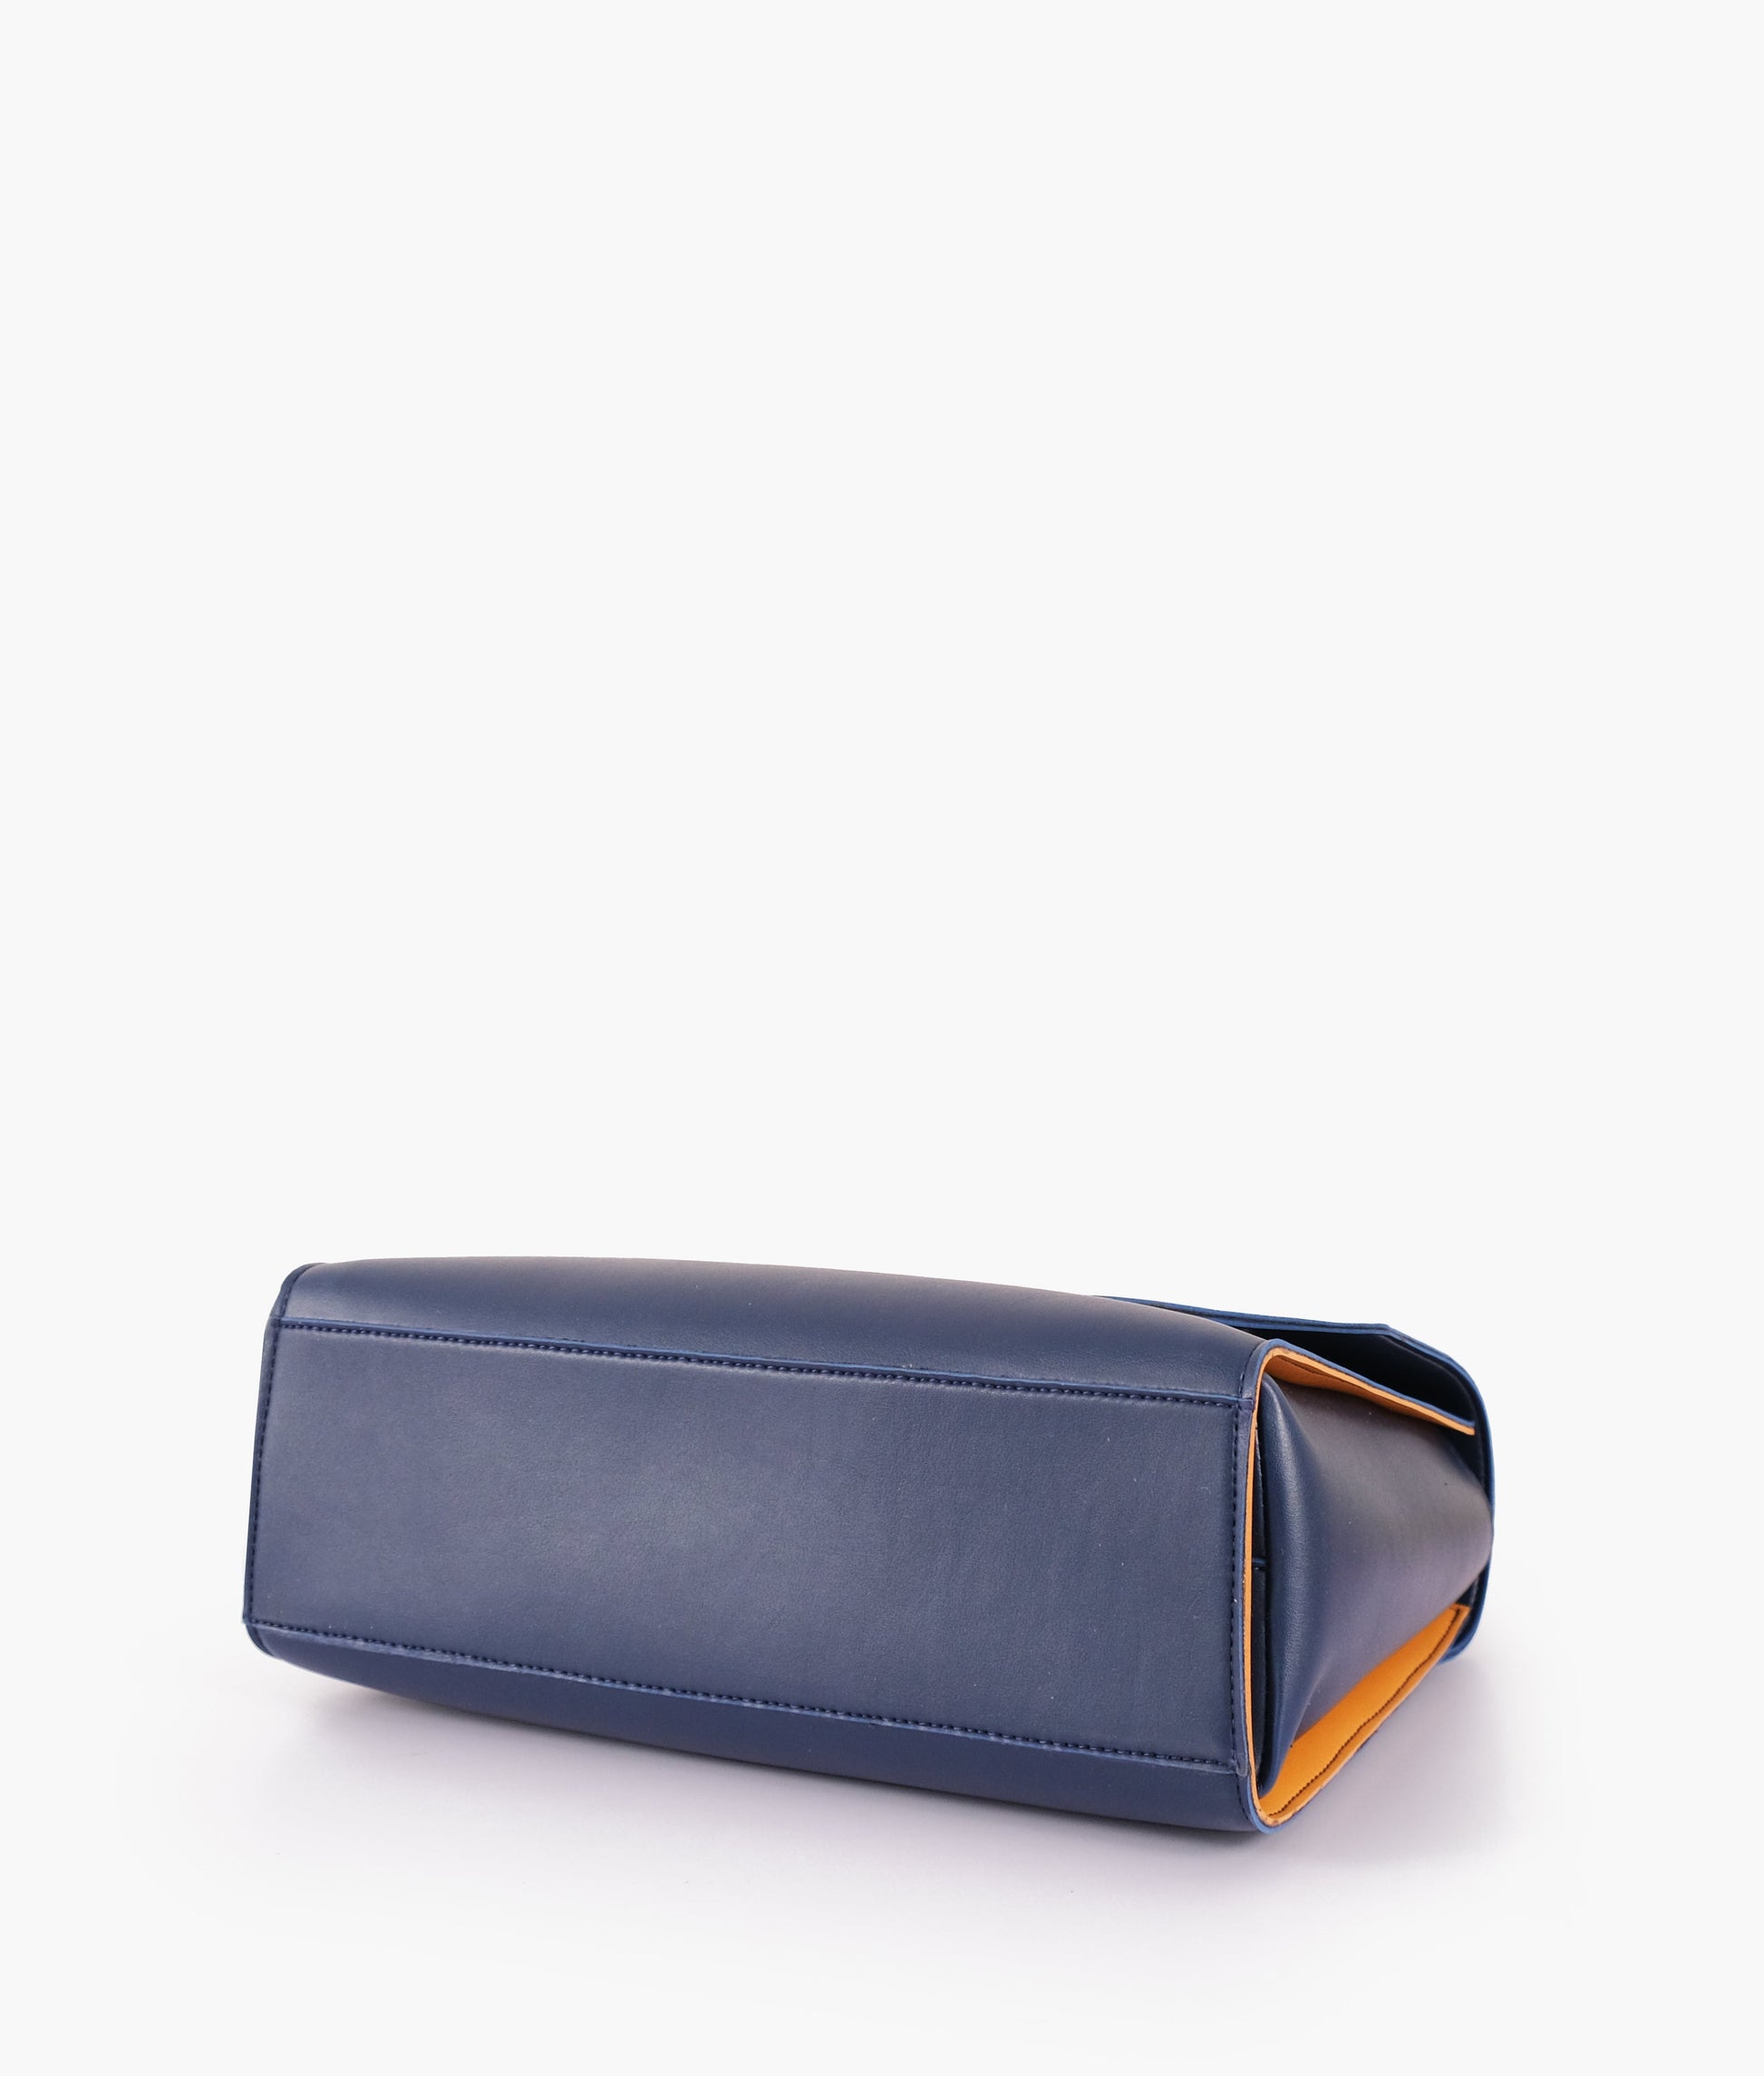 Buy Blue Flap-over Top-handle Bag in Pakistan